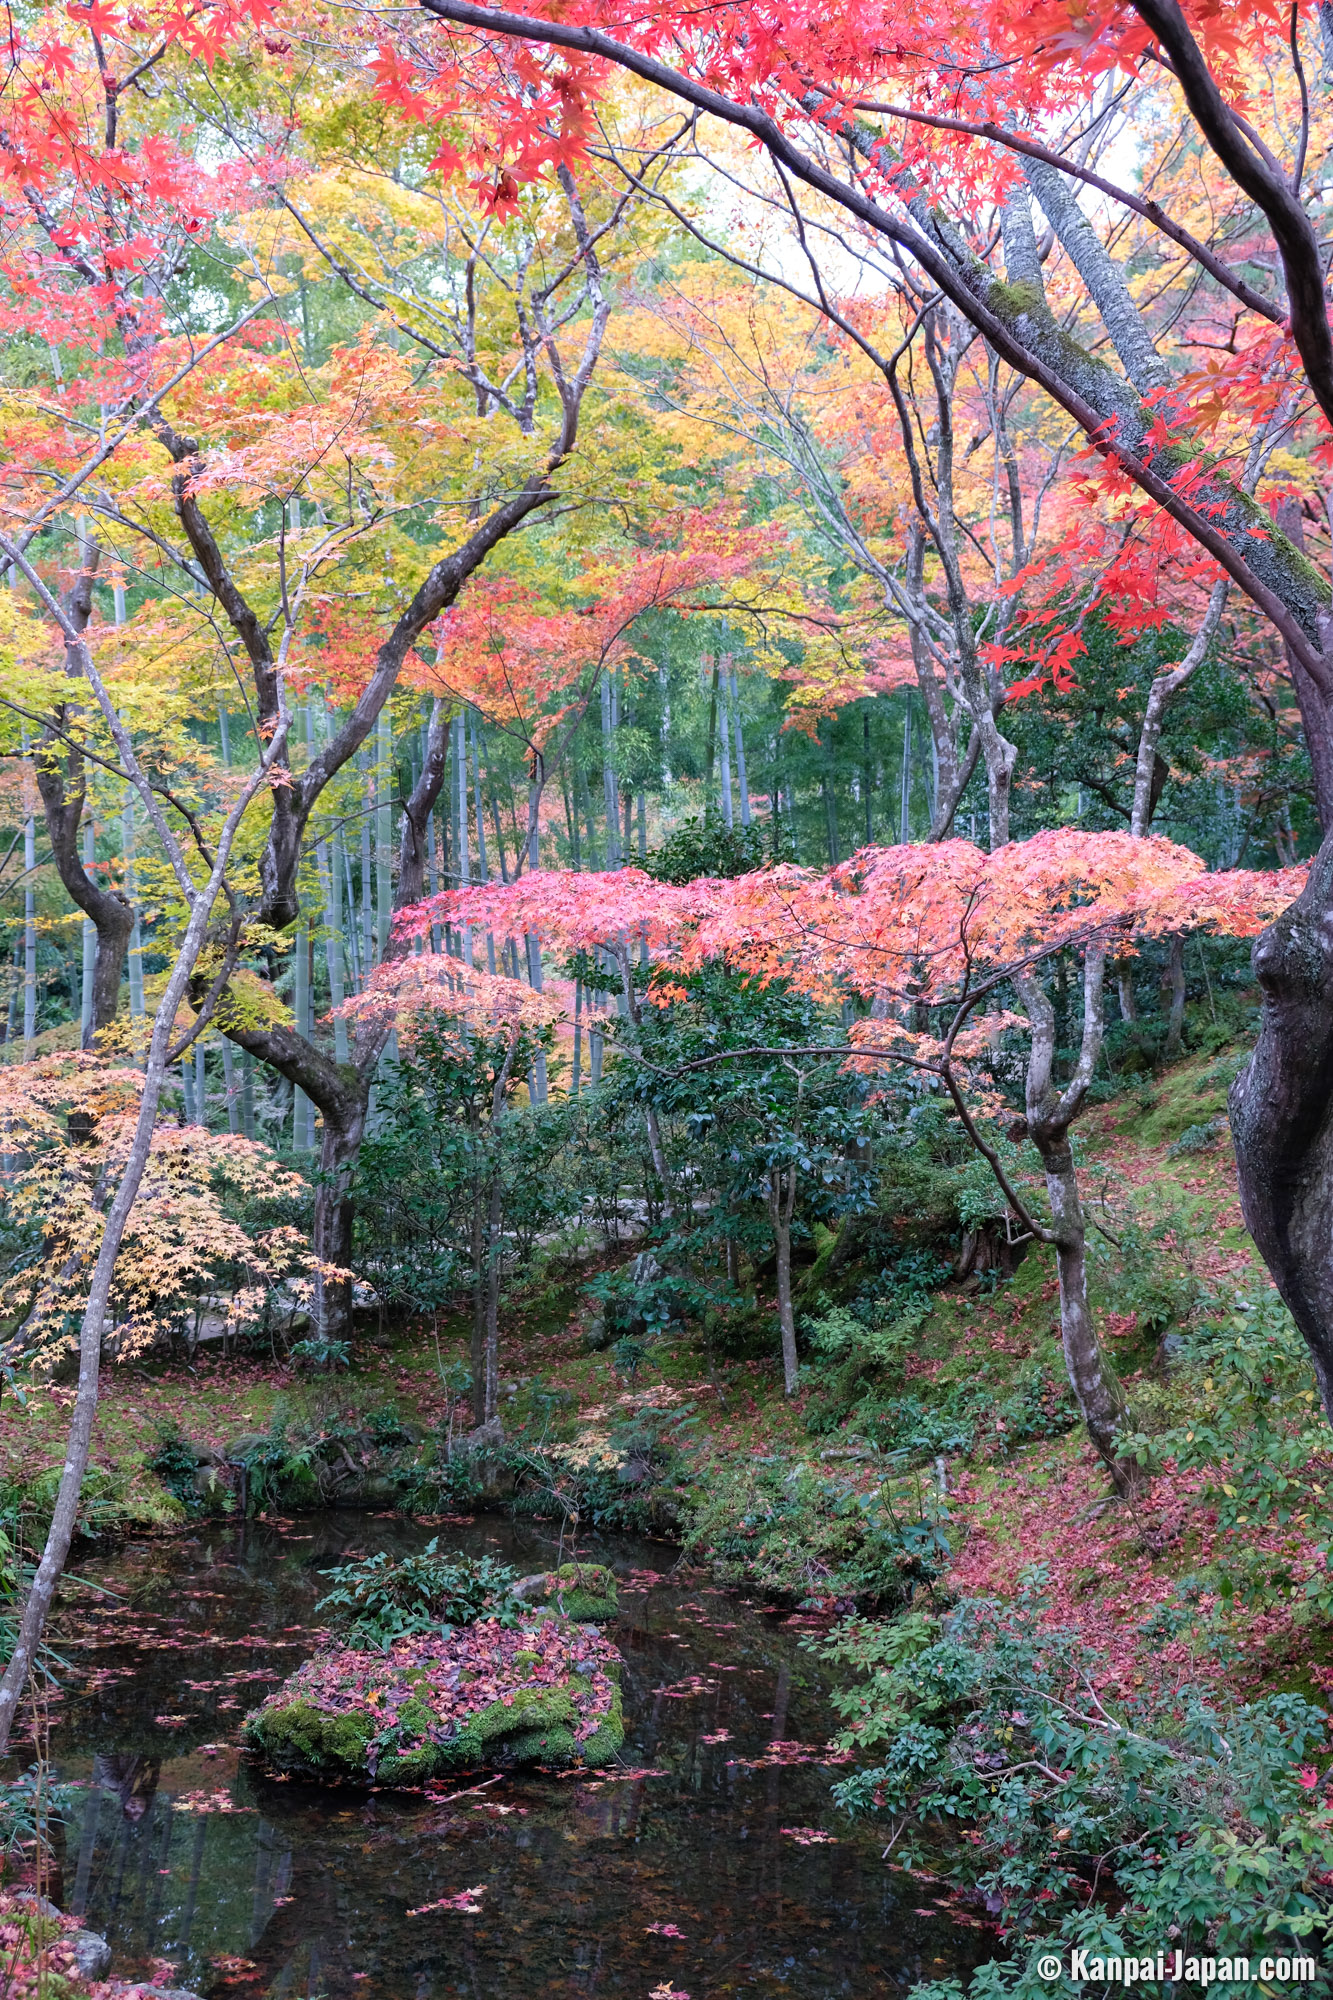 Jojakko-ji - The Hilly Walk in Arashiyama